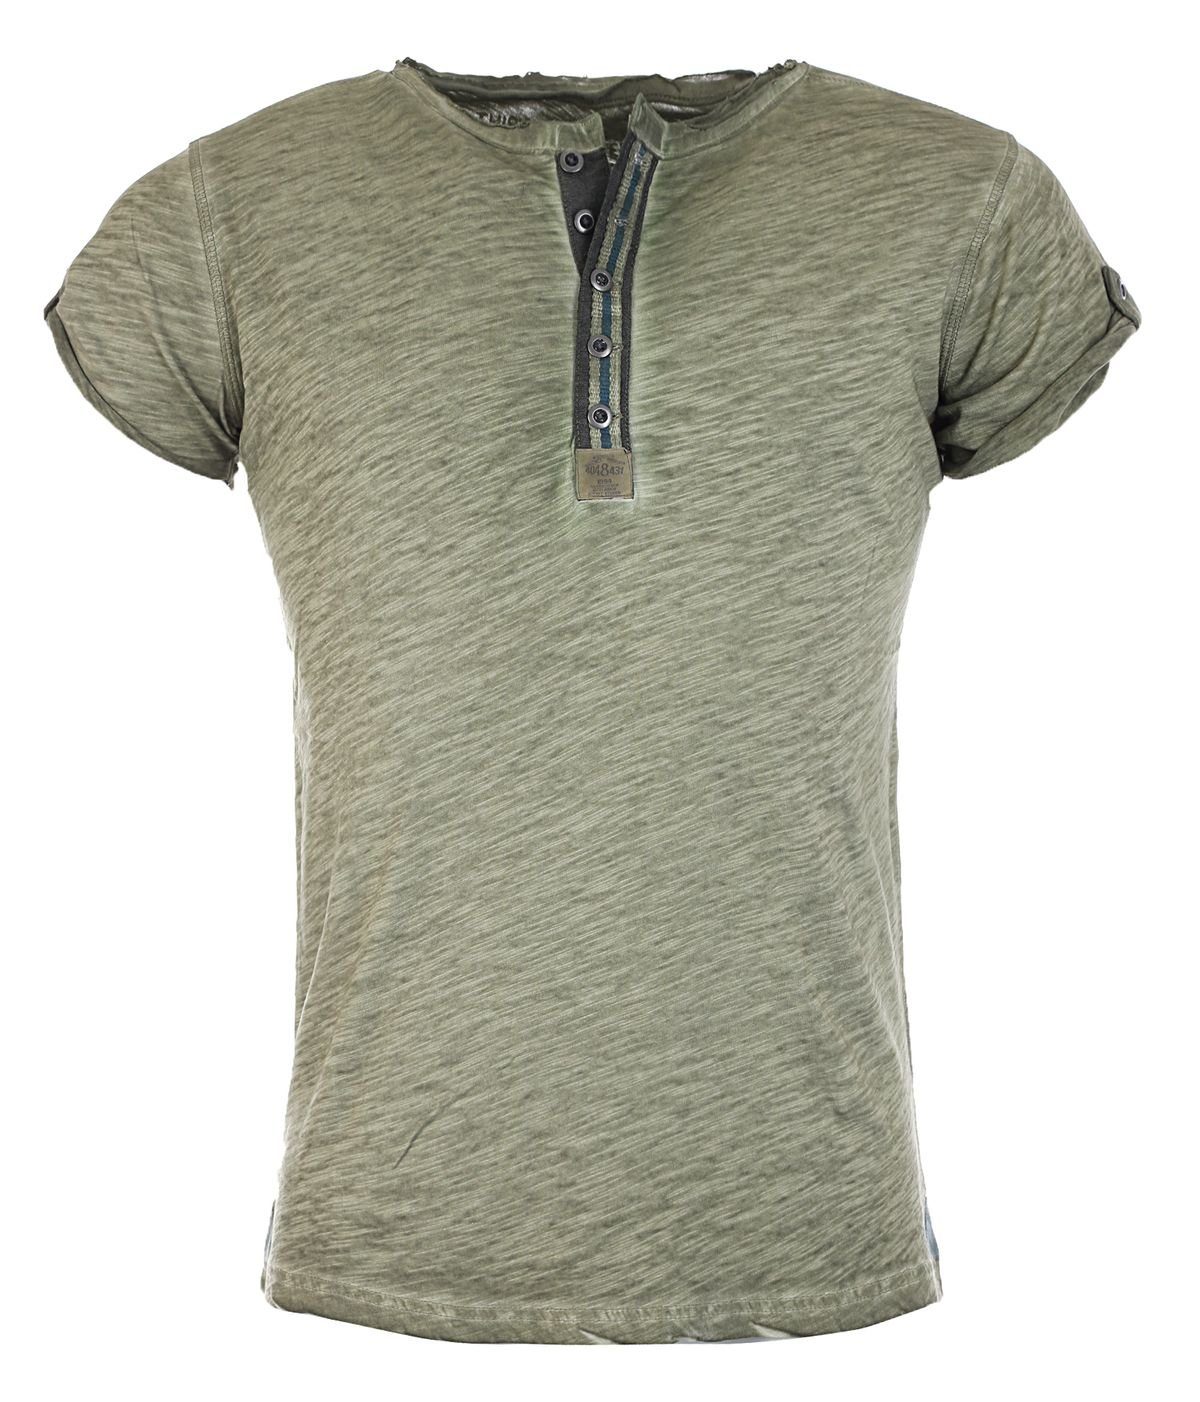 Key Largo T-Shirt für Herren Arena button vintage Look MT00023 mit Knopfleiste unifarben kurzarm slim fit Grün